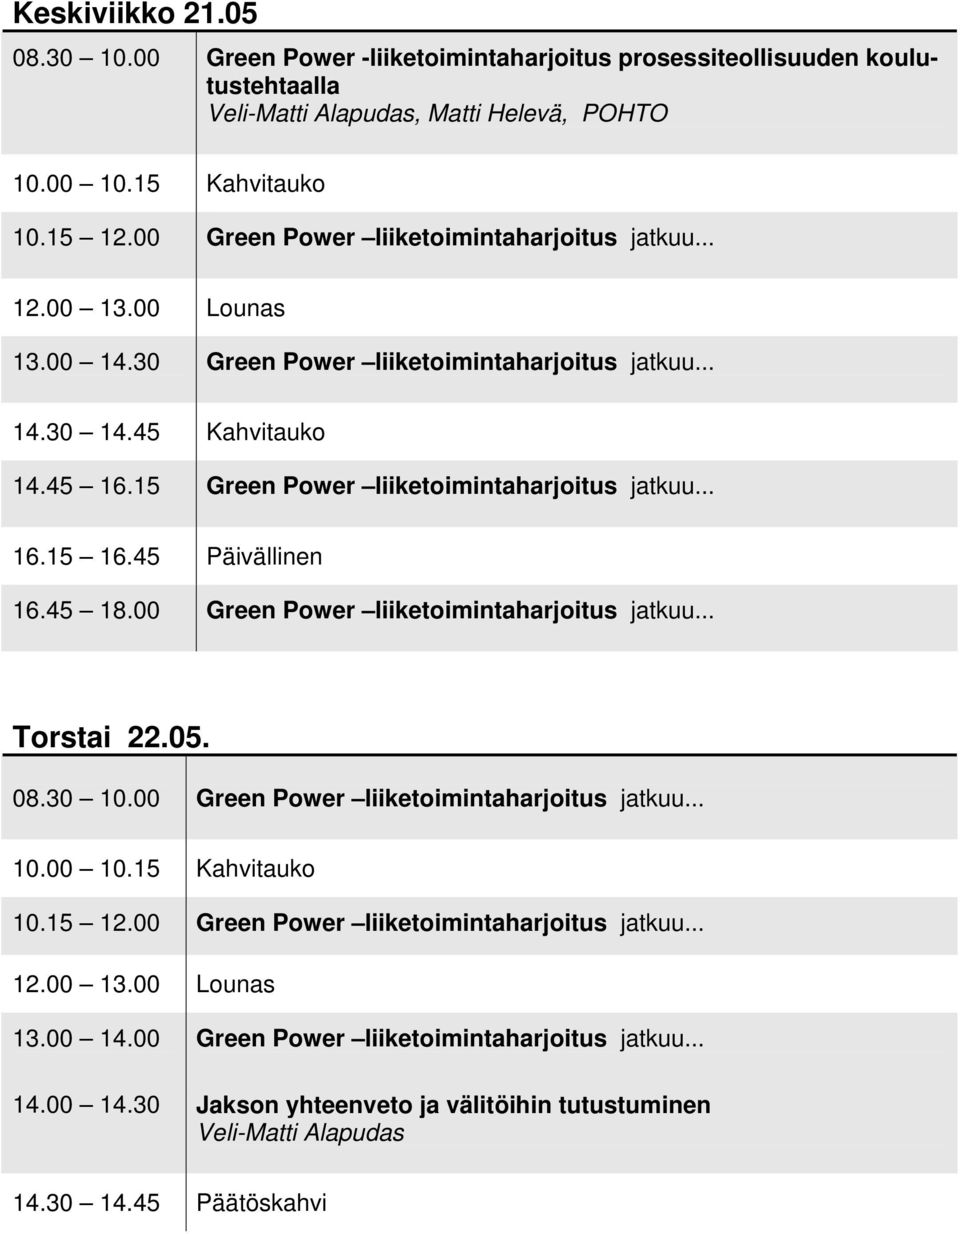 15 Green Power liiketoimintaharjoitus jatkuu... 16.15 16.45 Päivällinen 16.45 18.00 Green Power liiketoimintaharjoitus jatkuu... Torstai 22.05. 08.30 10.